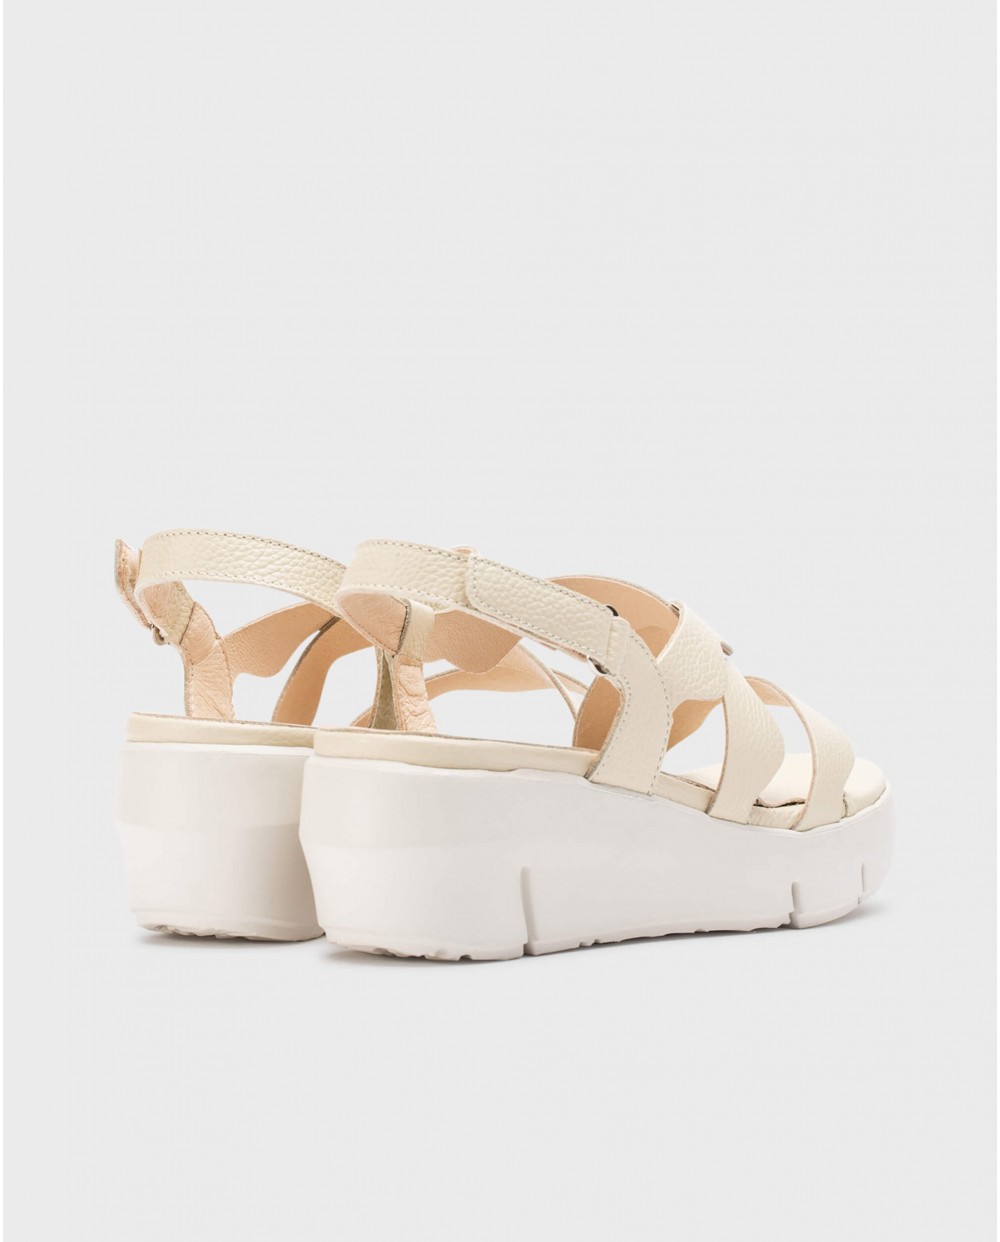 Wonders-Sandals-Cream Colorado sandals